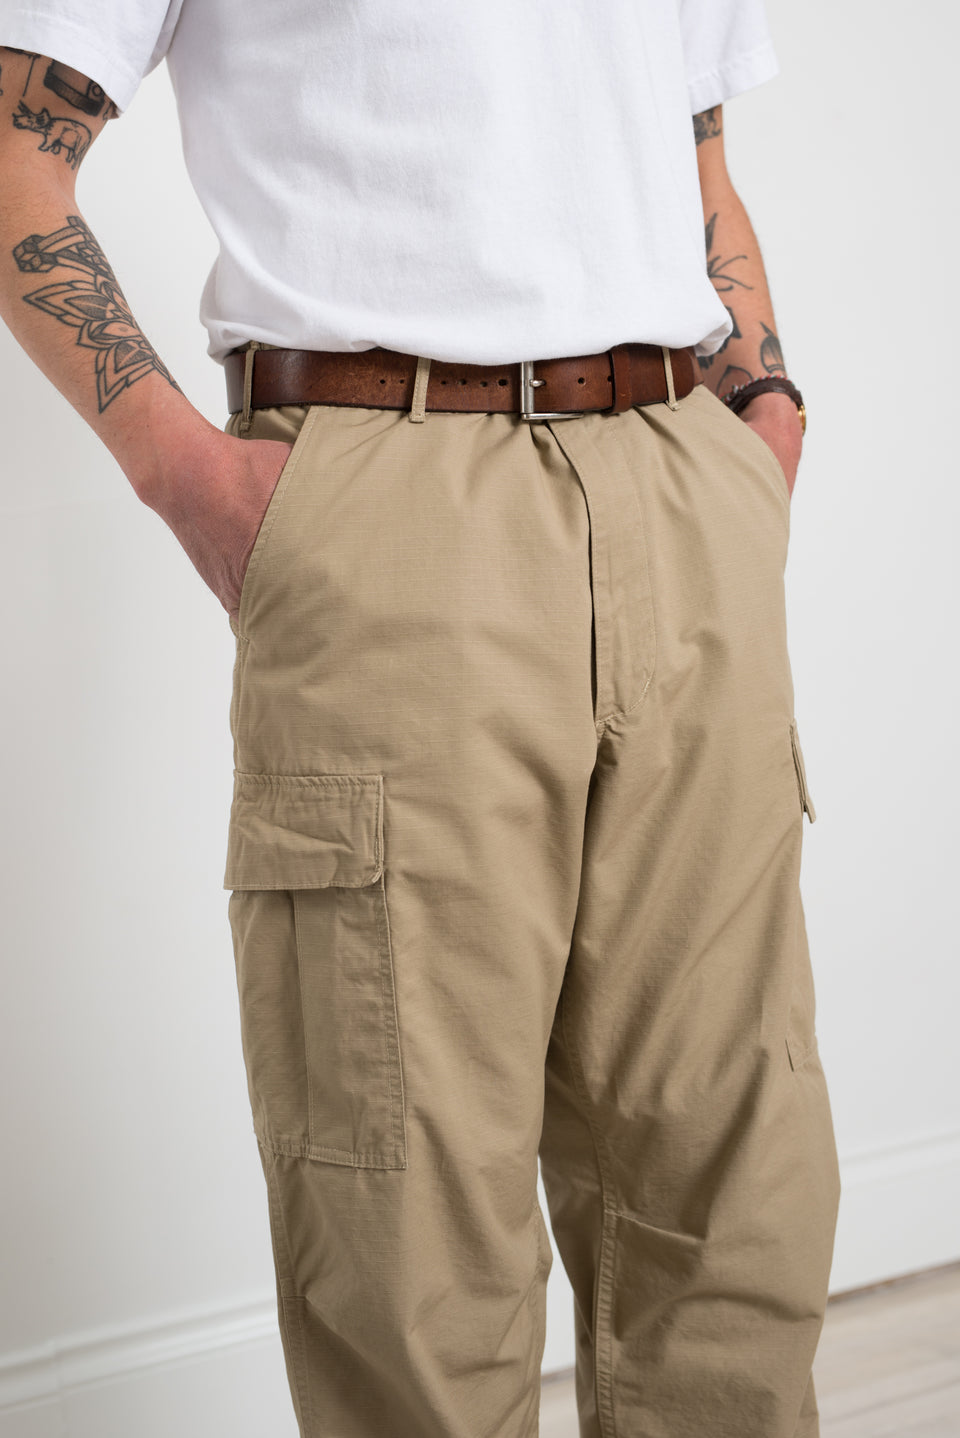 Vintage Fit 6 Pocket Cargo Pants Beige